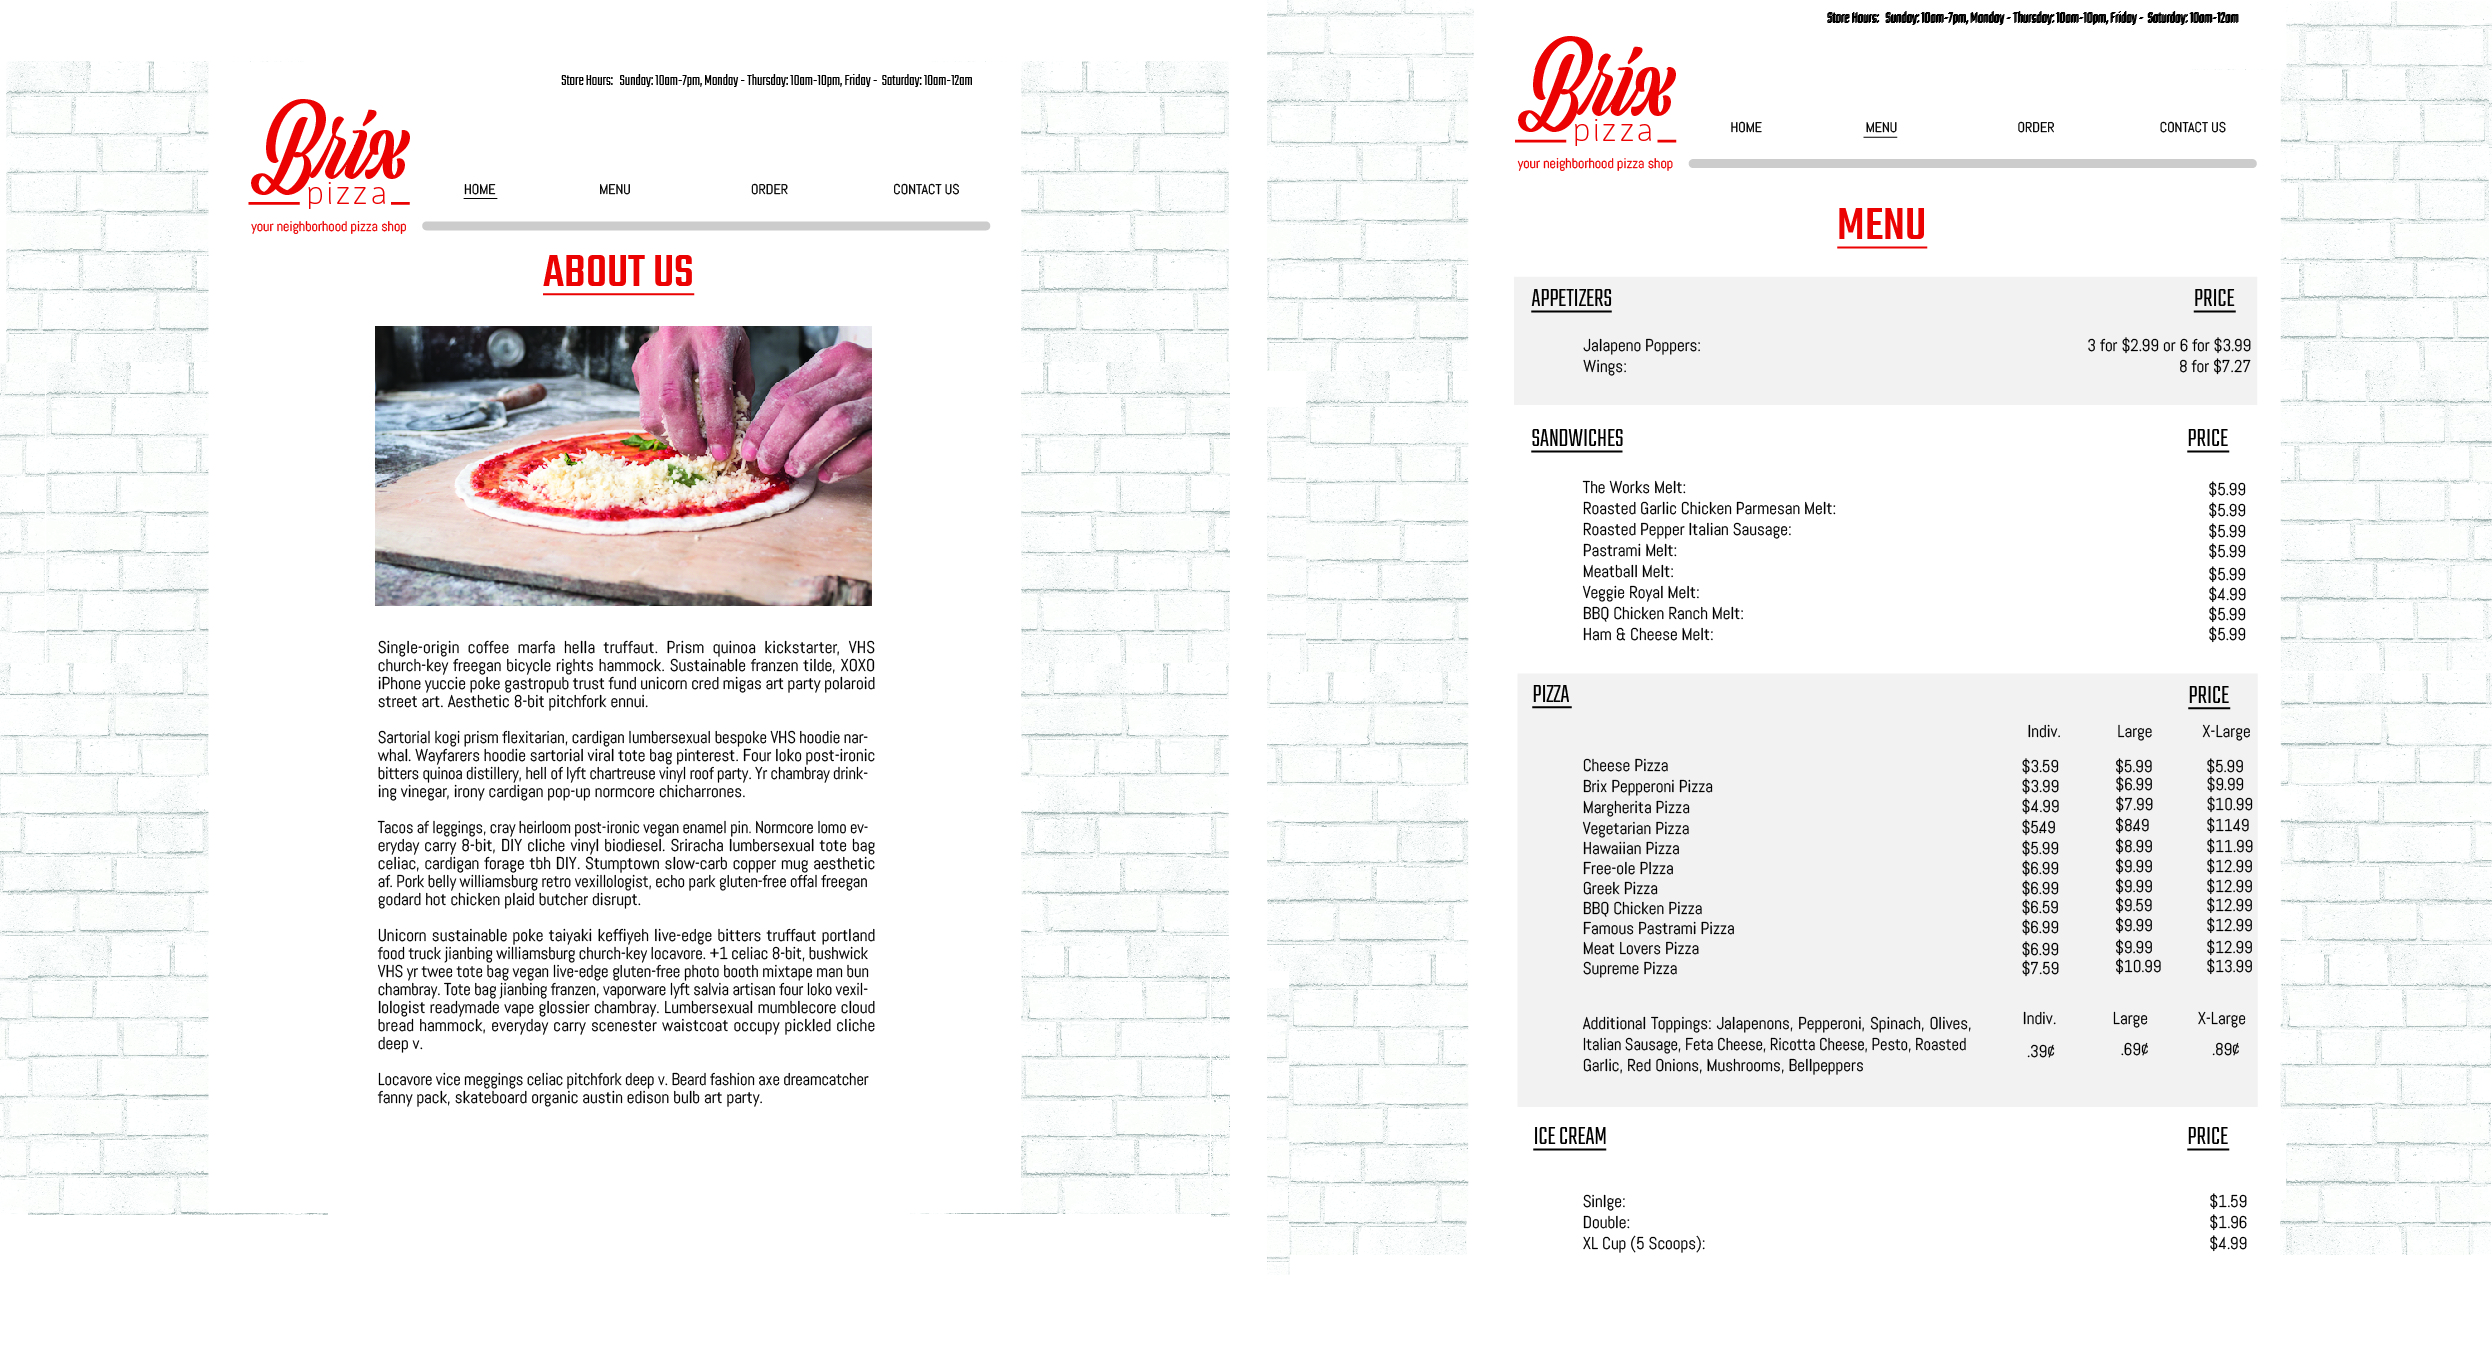 Homepage/Menu for Brix via web